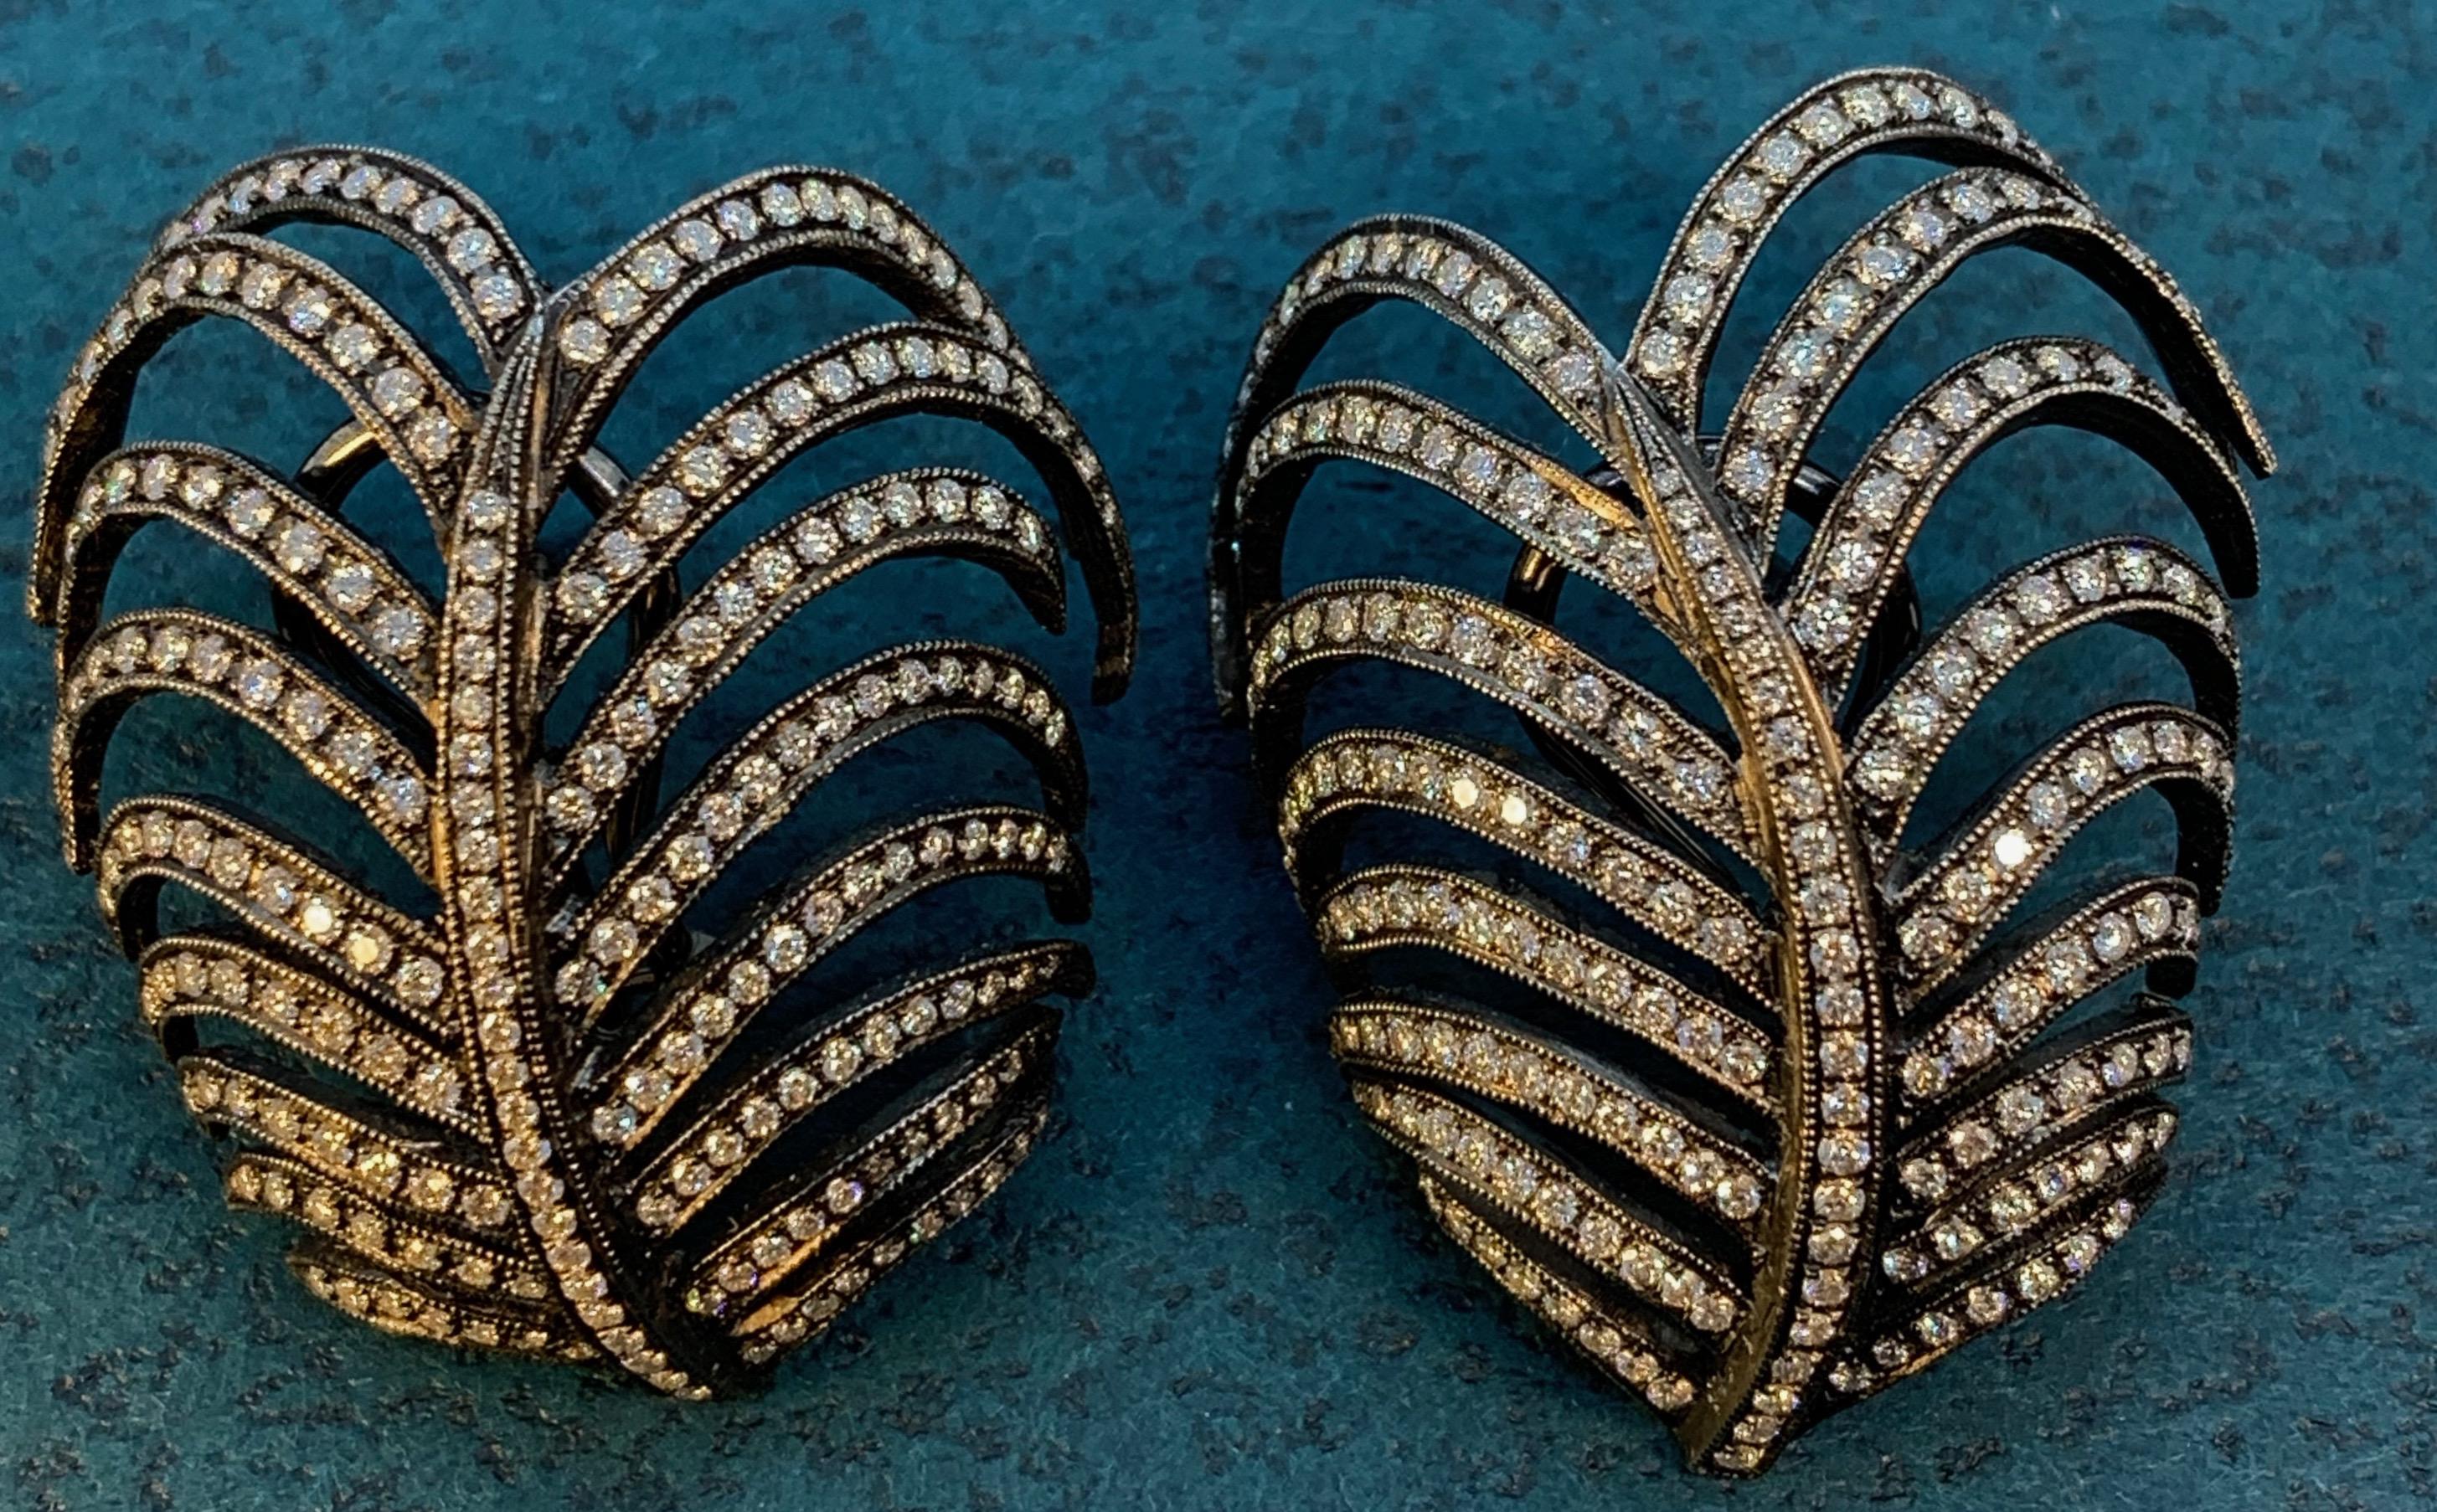 Diese sorgfältig von Hand gefassten, einzigartigen Ohrringe sind den anmutigen Wedeln der australischen Kentiapalme nachempfunden.  Der Designer Eytan Brandes hat sich bewusst dafür entschieden, die Ohrringe in zwei Formen zu gießen, so dass sie